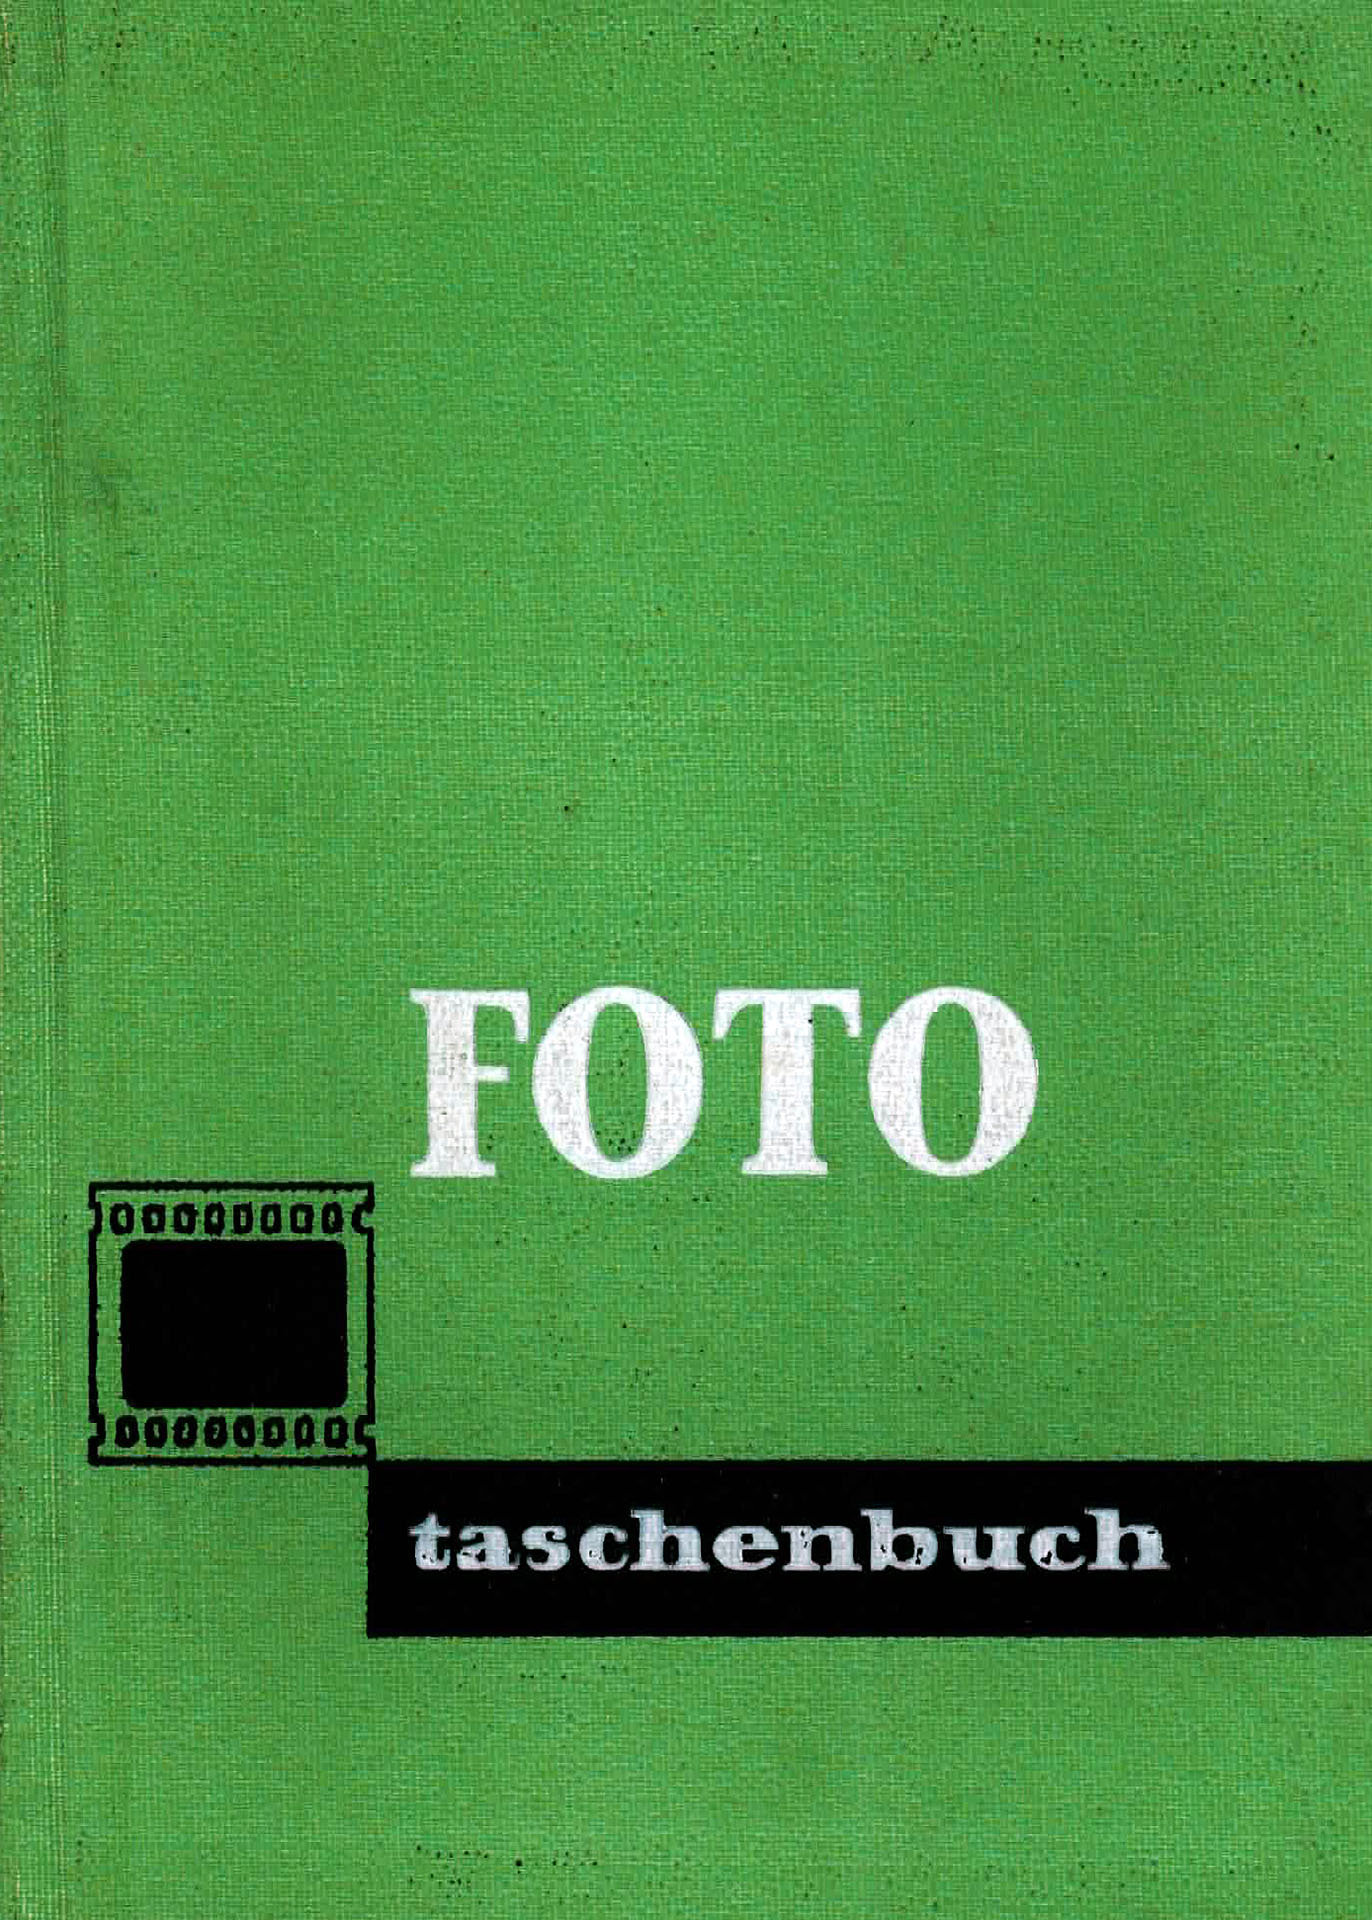 Foto - Taschenbuch - Brauer, Egon